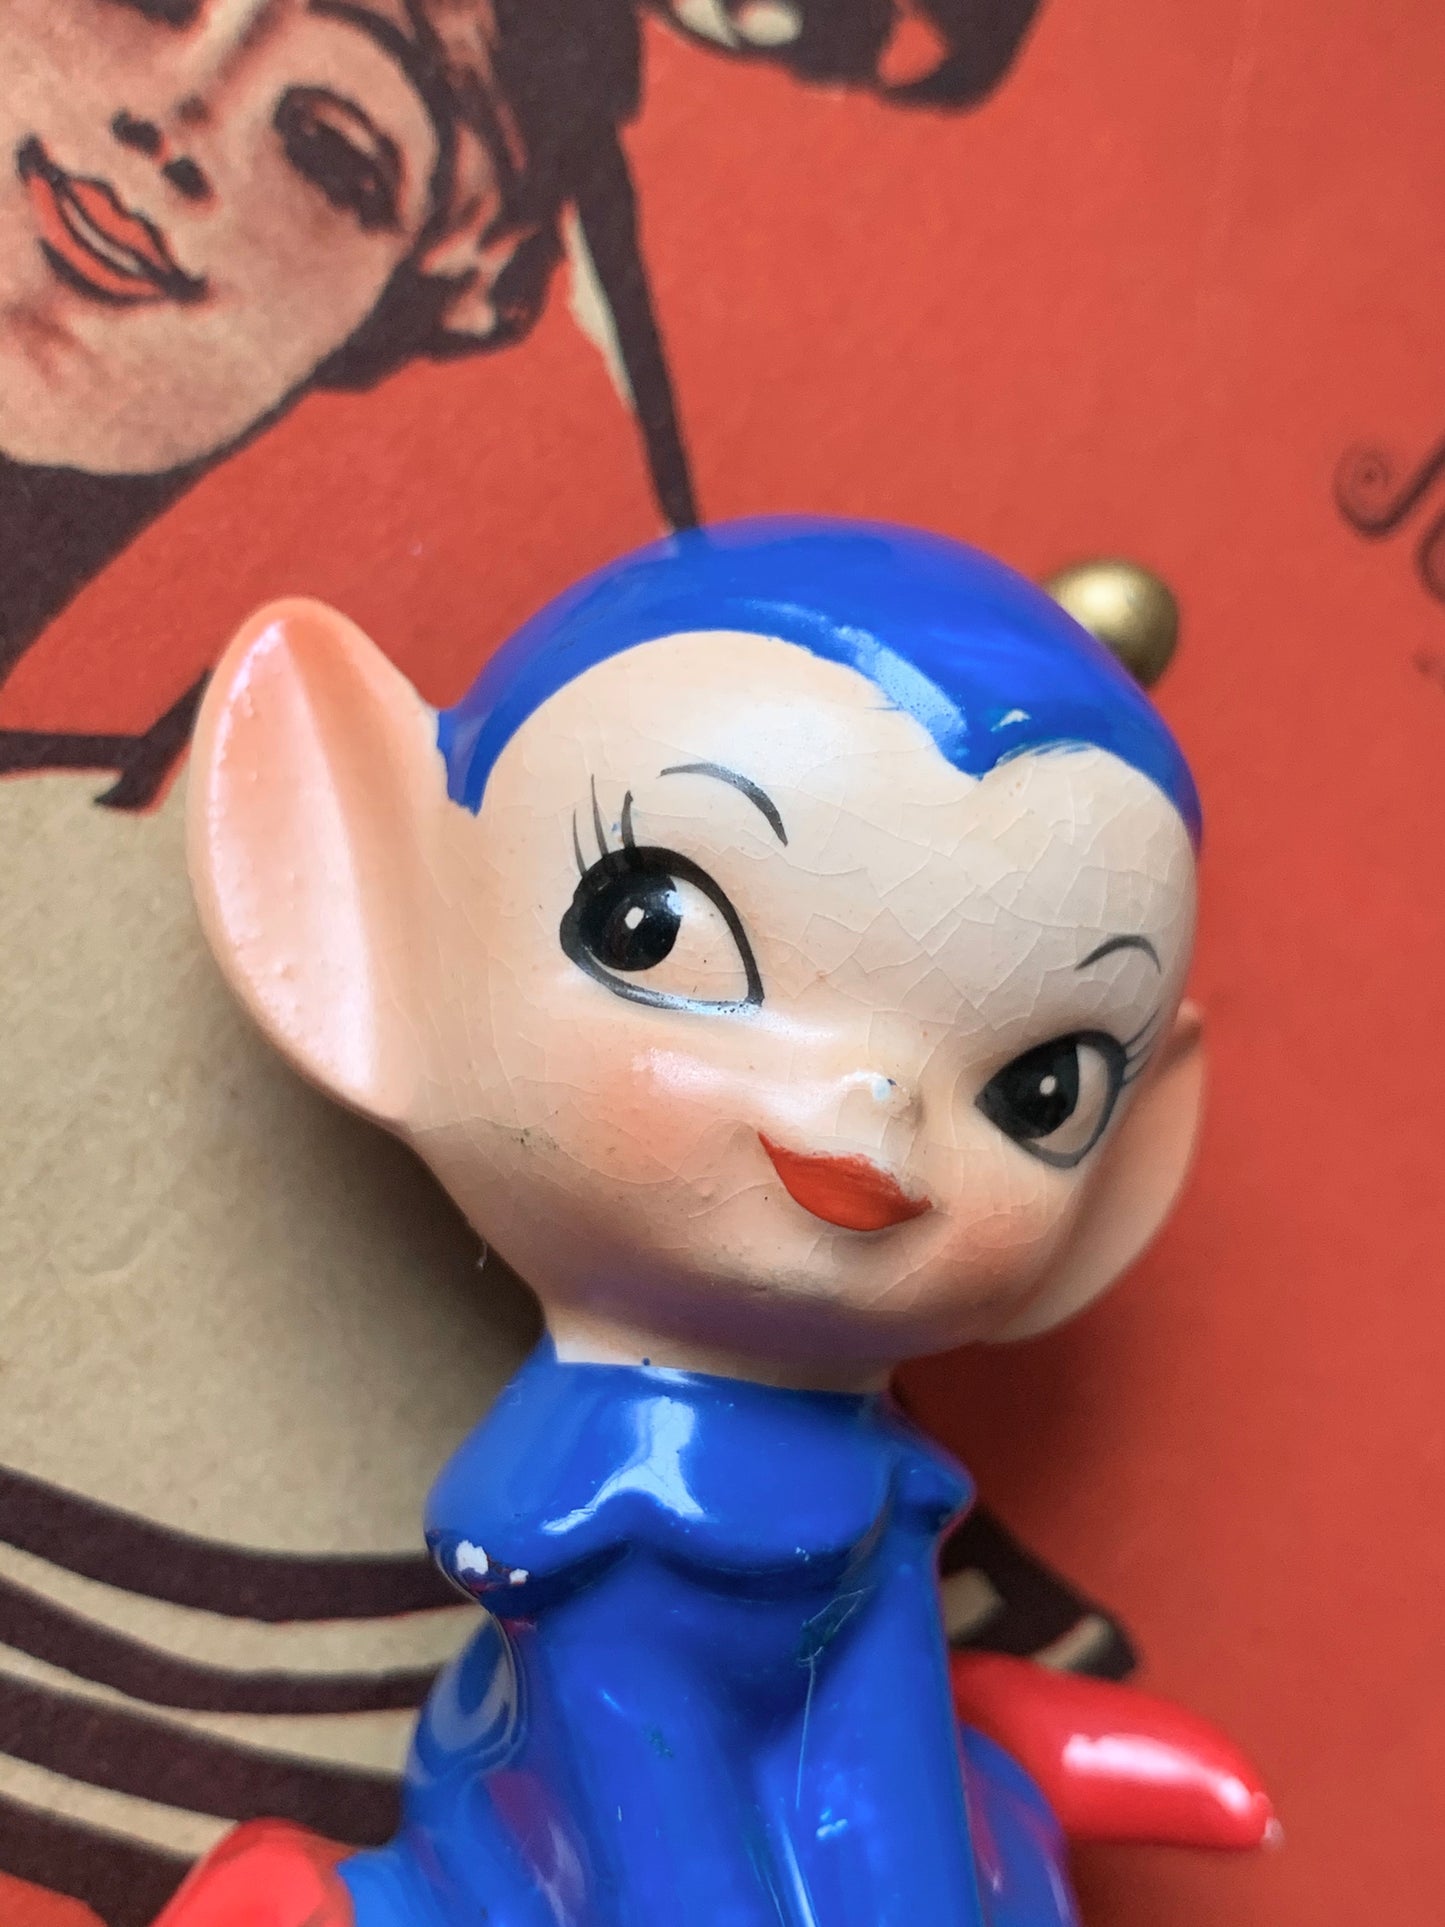 Vintage miniature blue elf figurine